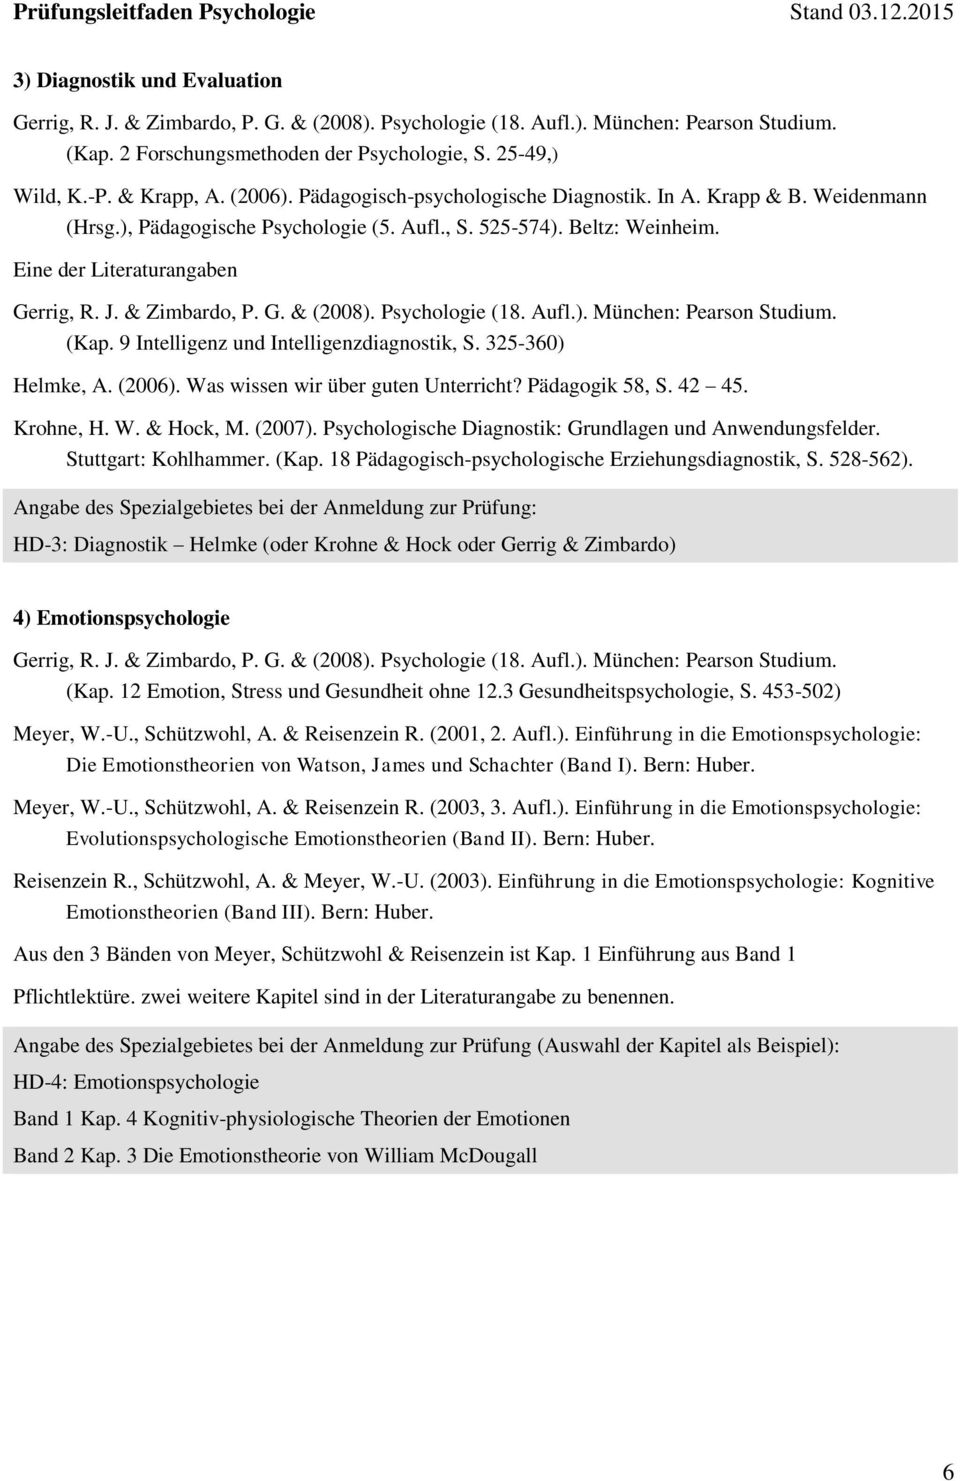 & Zimbardo, P. G. & (2008). Psychologie (18. Aufl.). München: Pearson Studium. (Kap. 9 Intelligenz und Intelligenzdiagnostik, S. 325-360) Helmke, A. (2006). Was wissen wir über guten Unterricht?